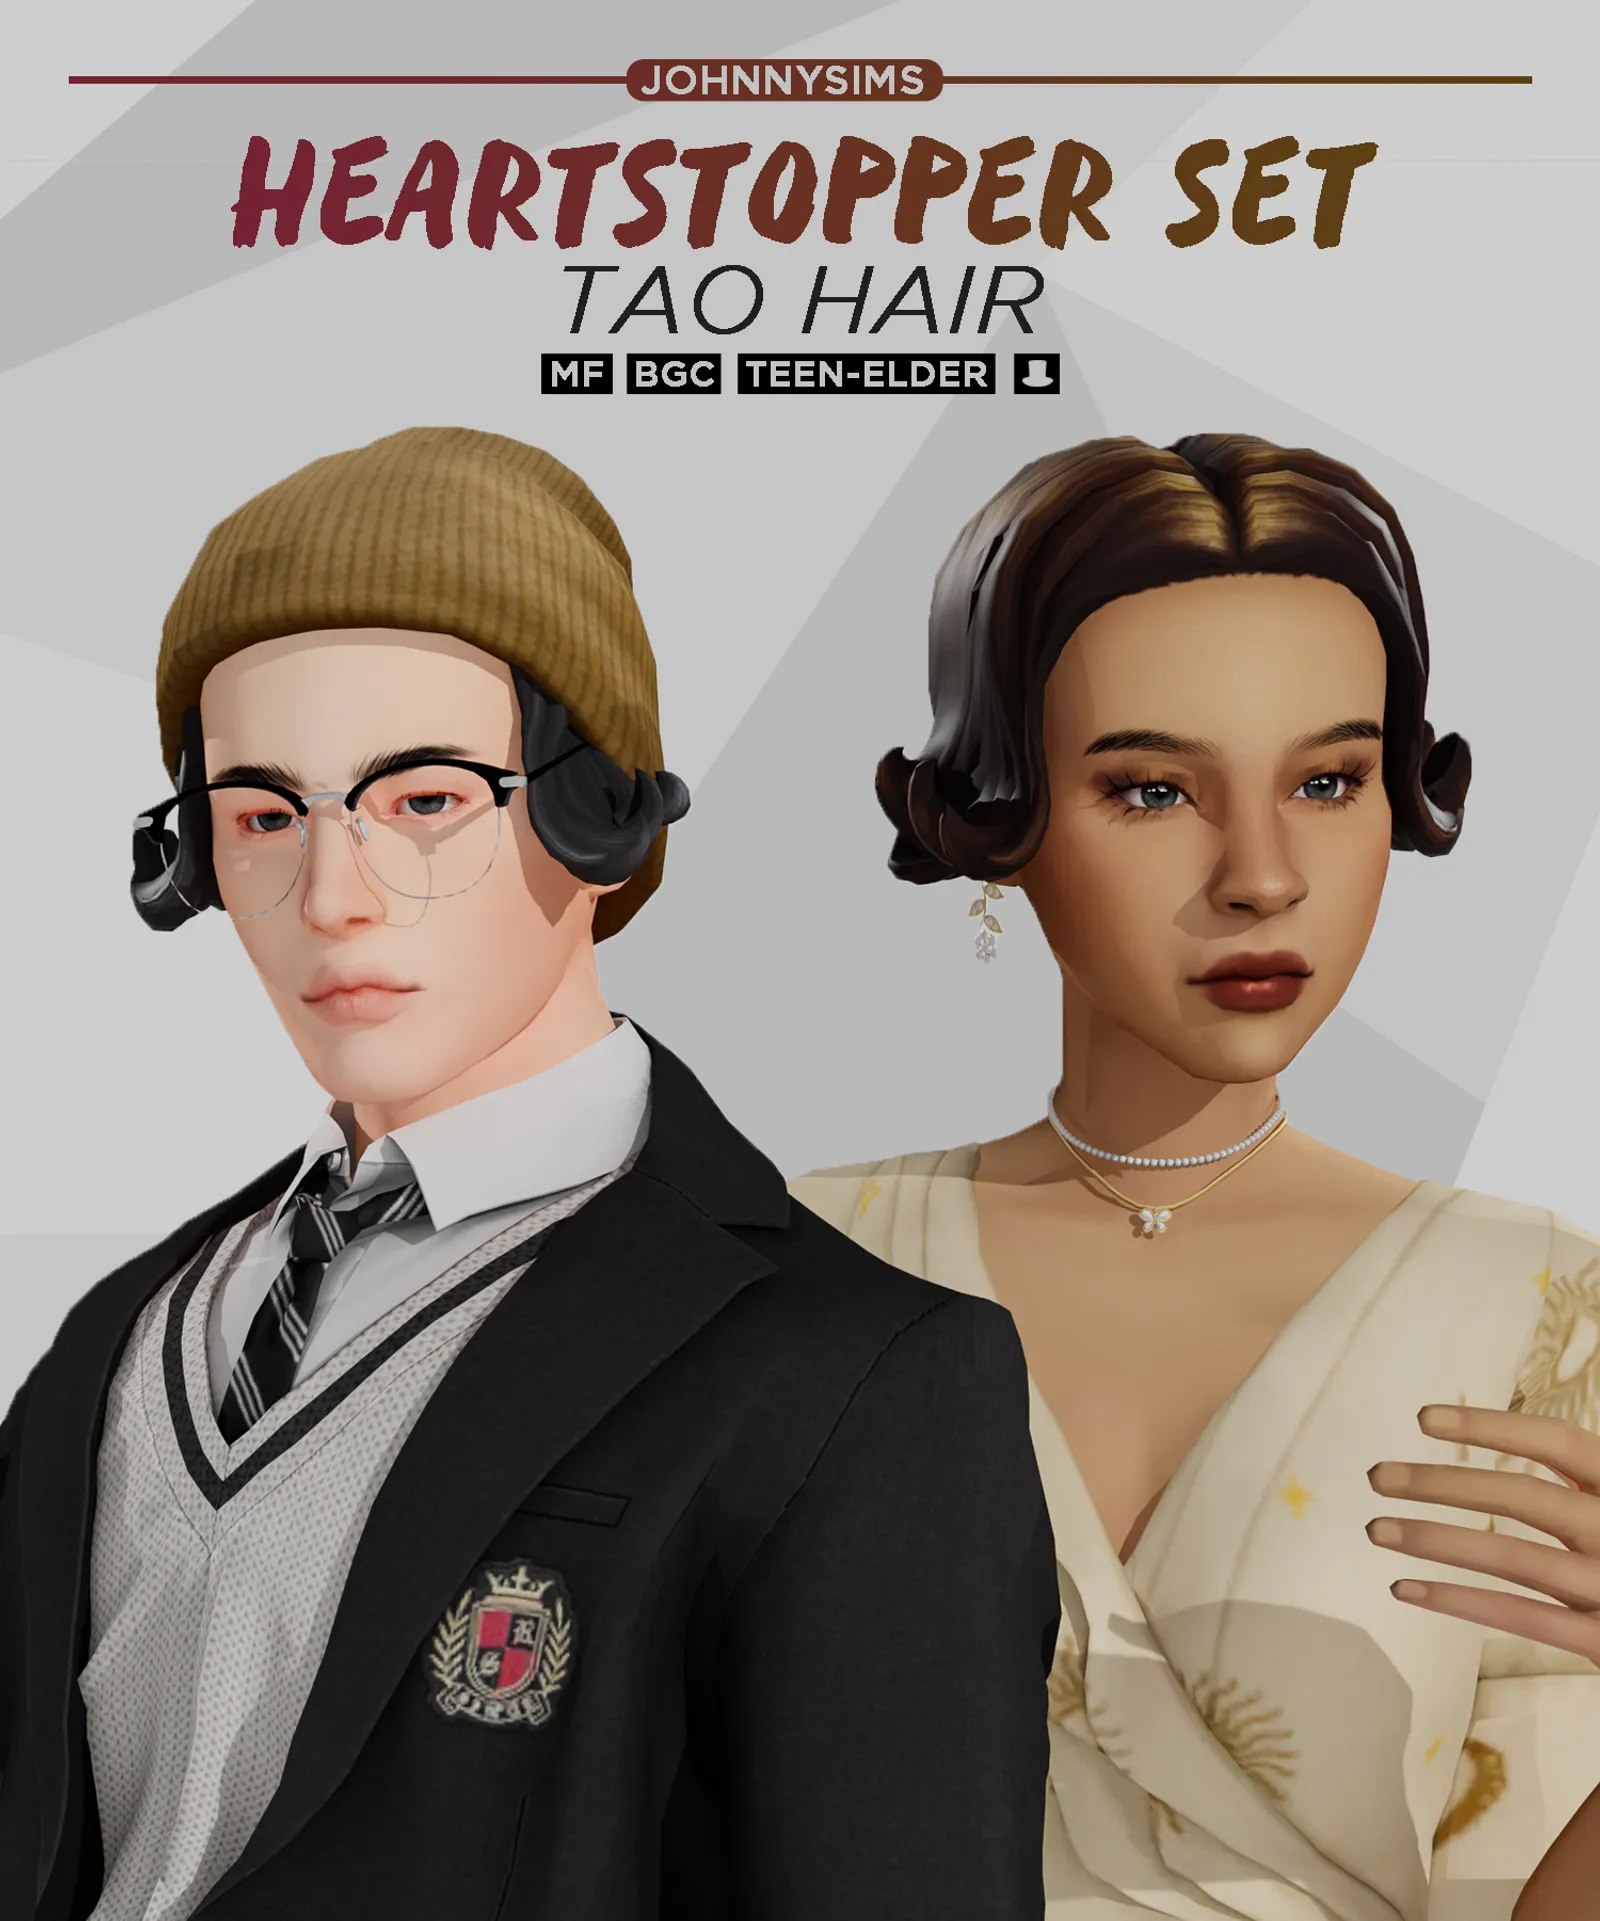 Heartstopper Set (Tao Hair)